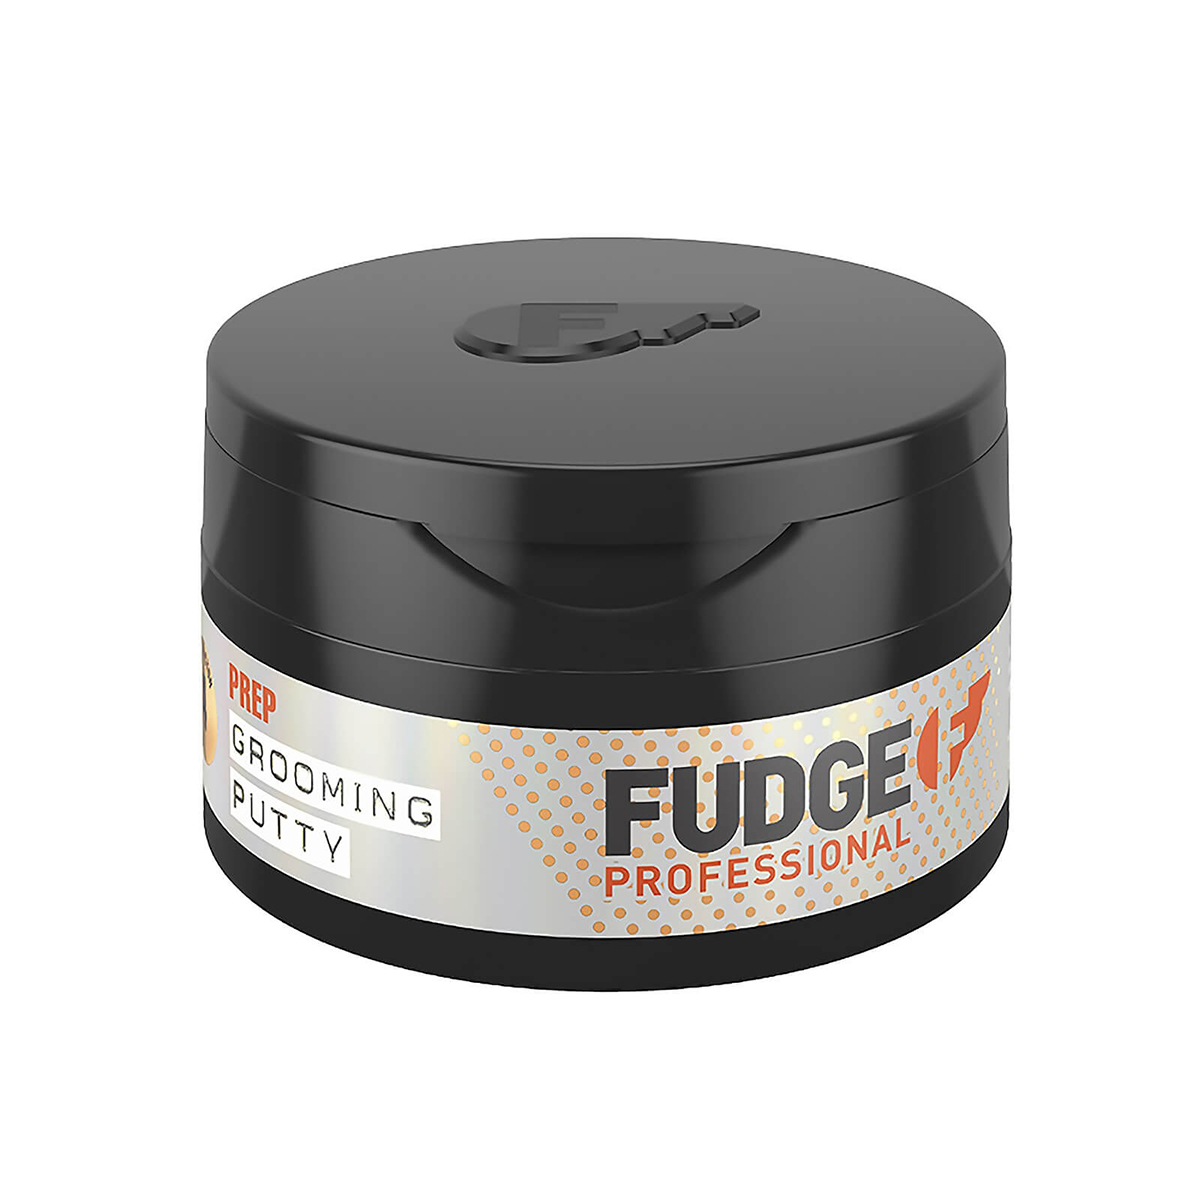 Nuttig Achterhouden duidelijkheid Fudge Prep Grooming Putty 75gr online kopen? Fudge Paste